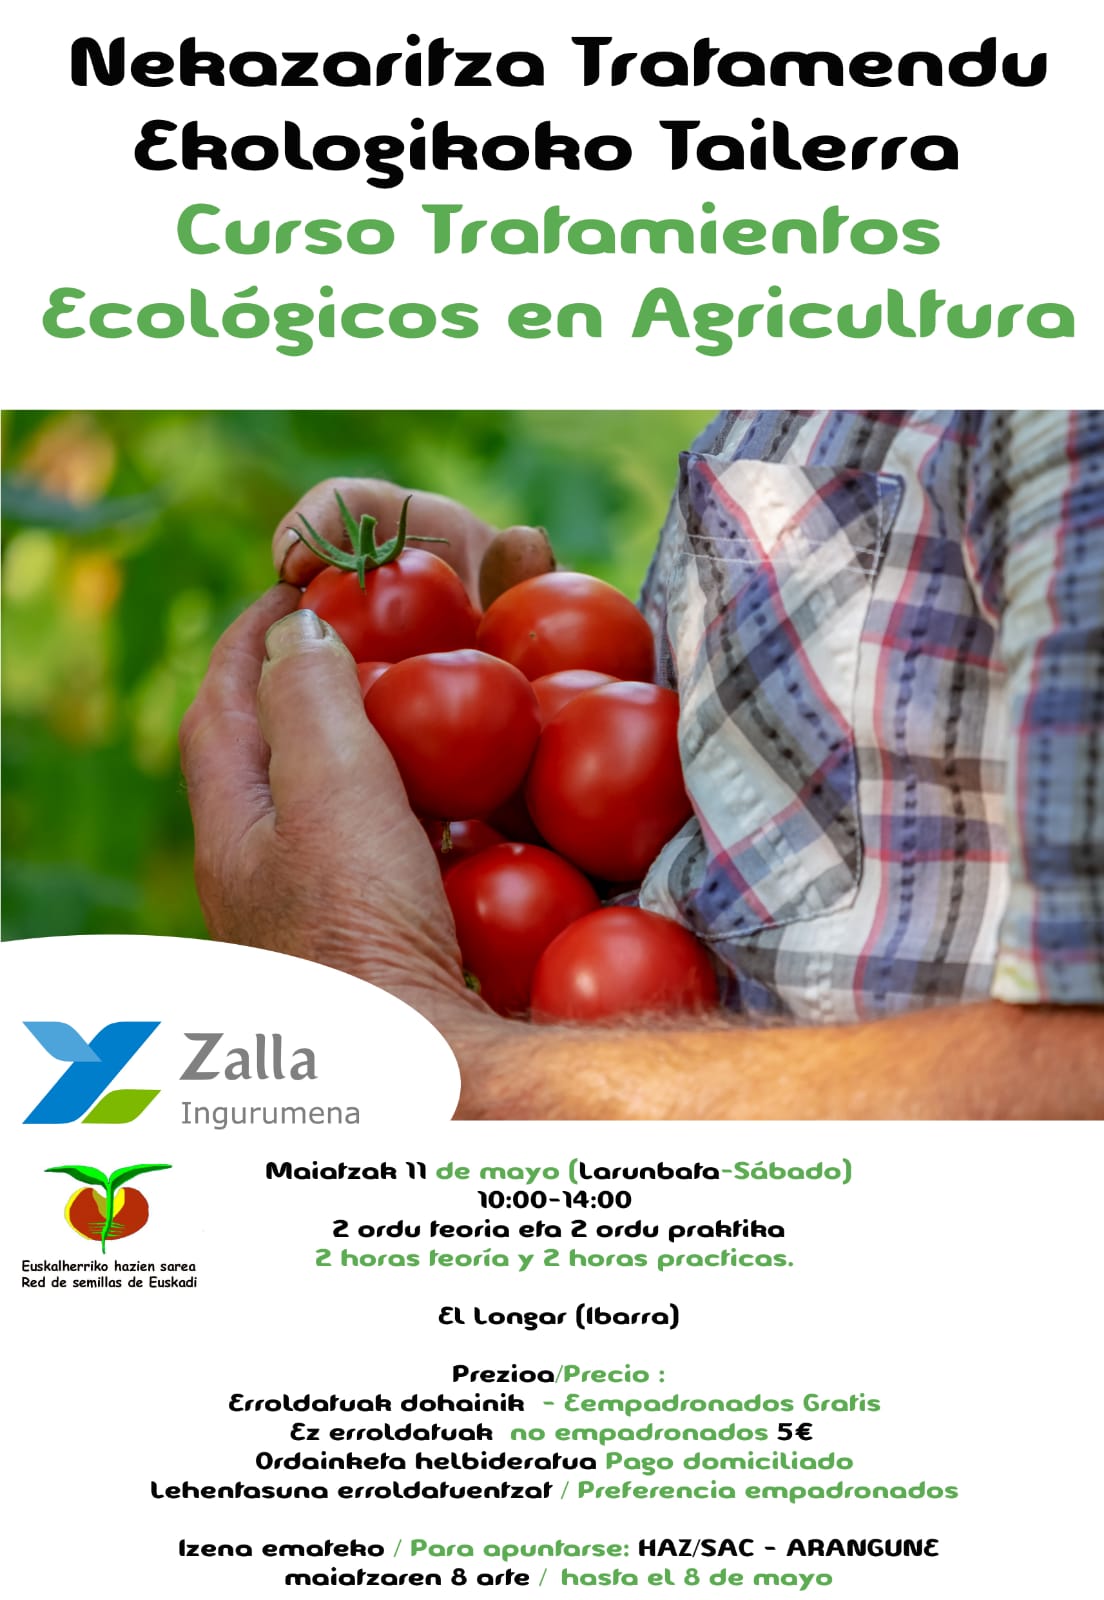 Curso de Tratamientos Ecológicos en Agricultura